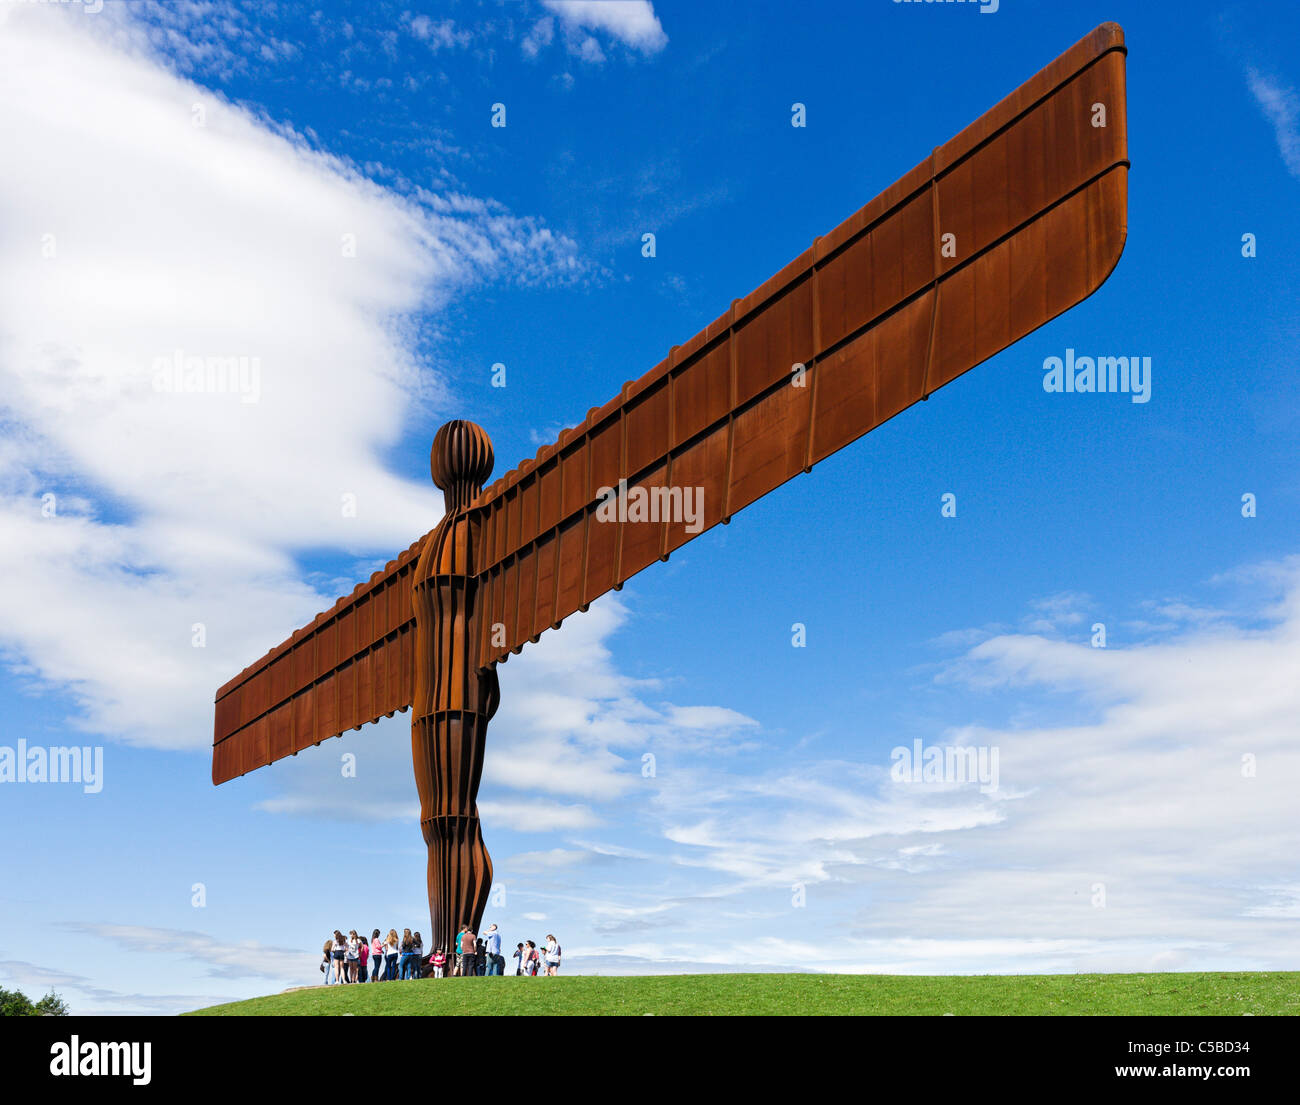 Les touristes sous l'Ange de la sculpture du Nord par Antony Gormley, Gateshead, Tyne et Wear, Angleterre du Nord-Est, Royaume-Uni Banque D'Images